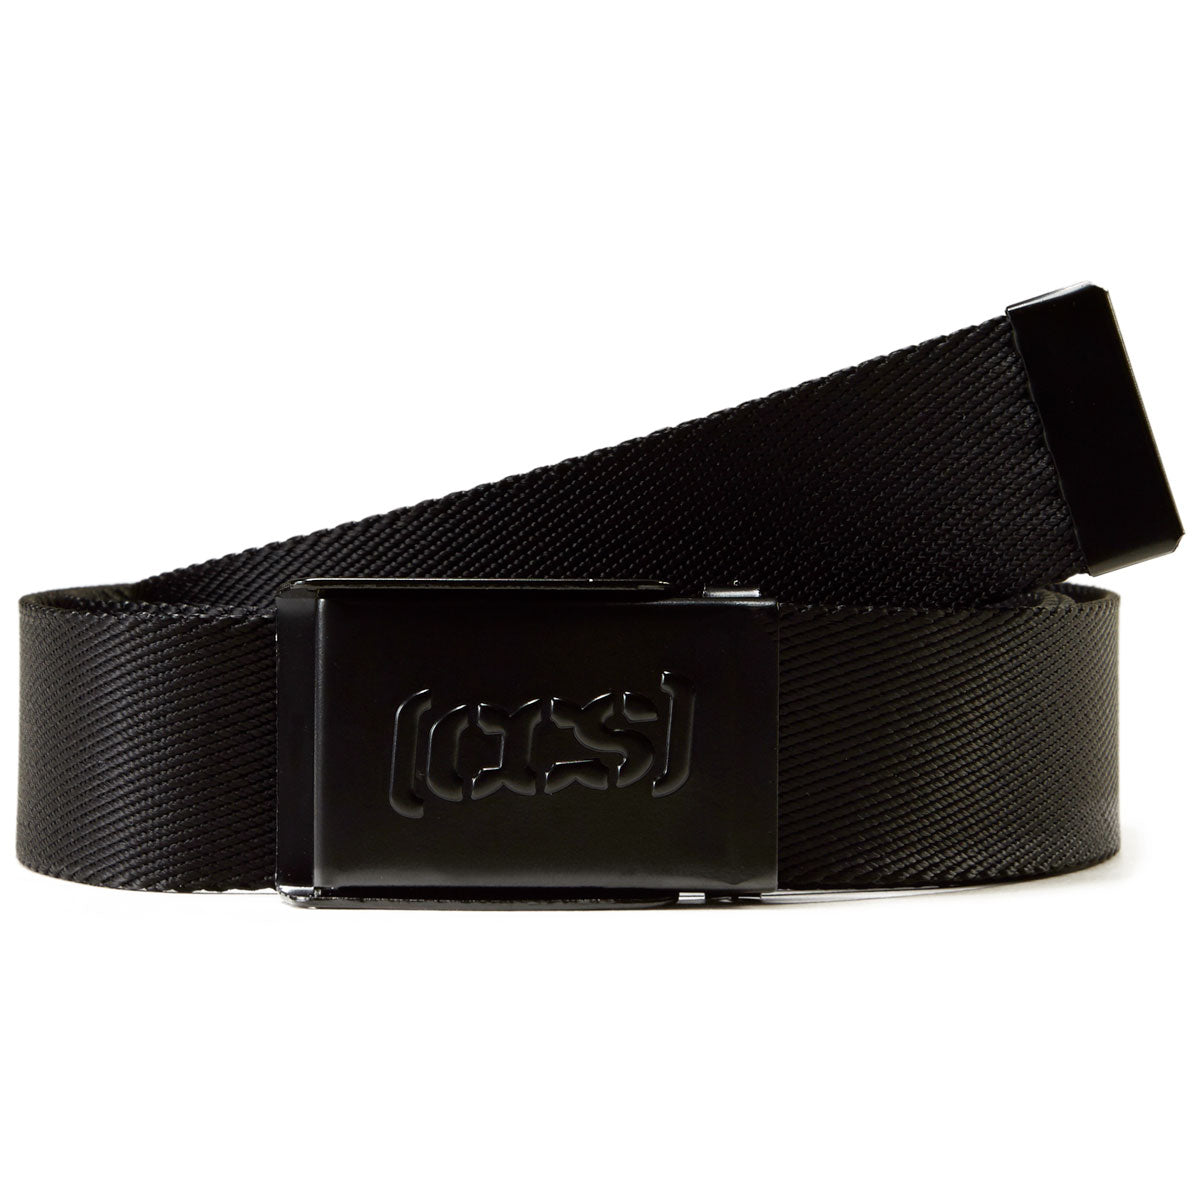 CCS Black Logo Buckle Belt - Black image 1